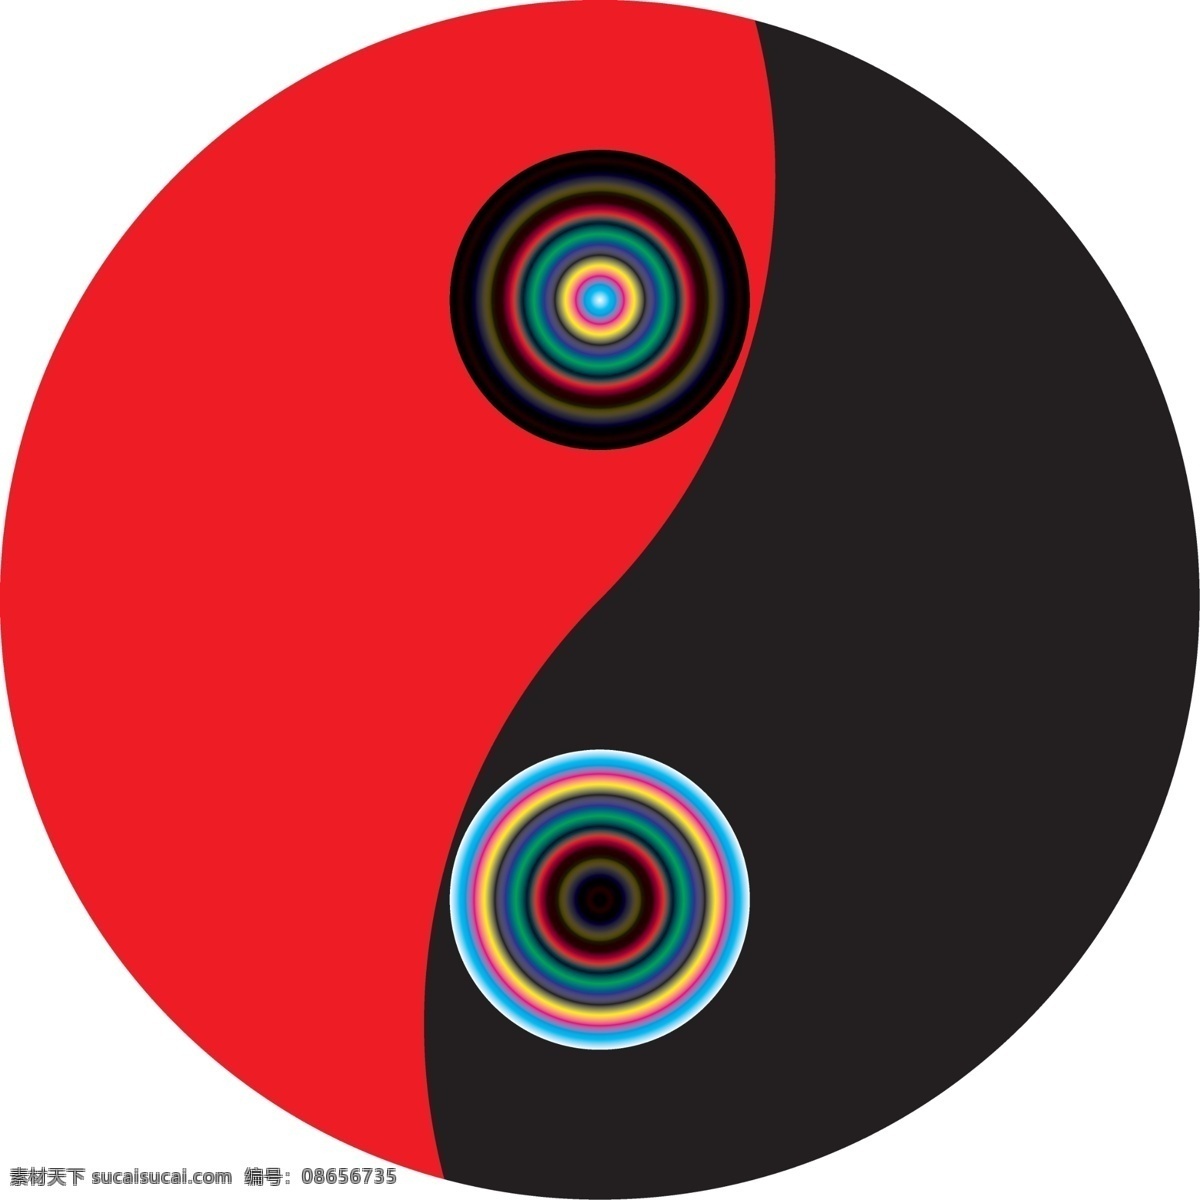 标准太极 分割 渐变 圆形 红与黑 标志图标 其他图标 bmp